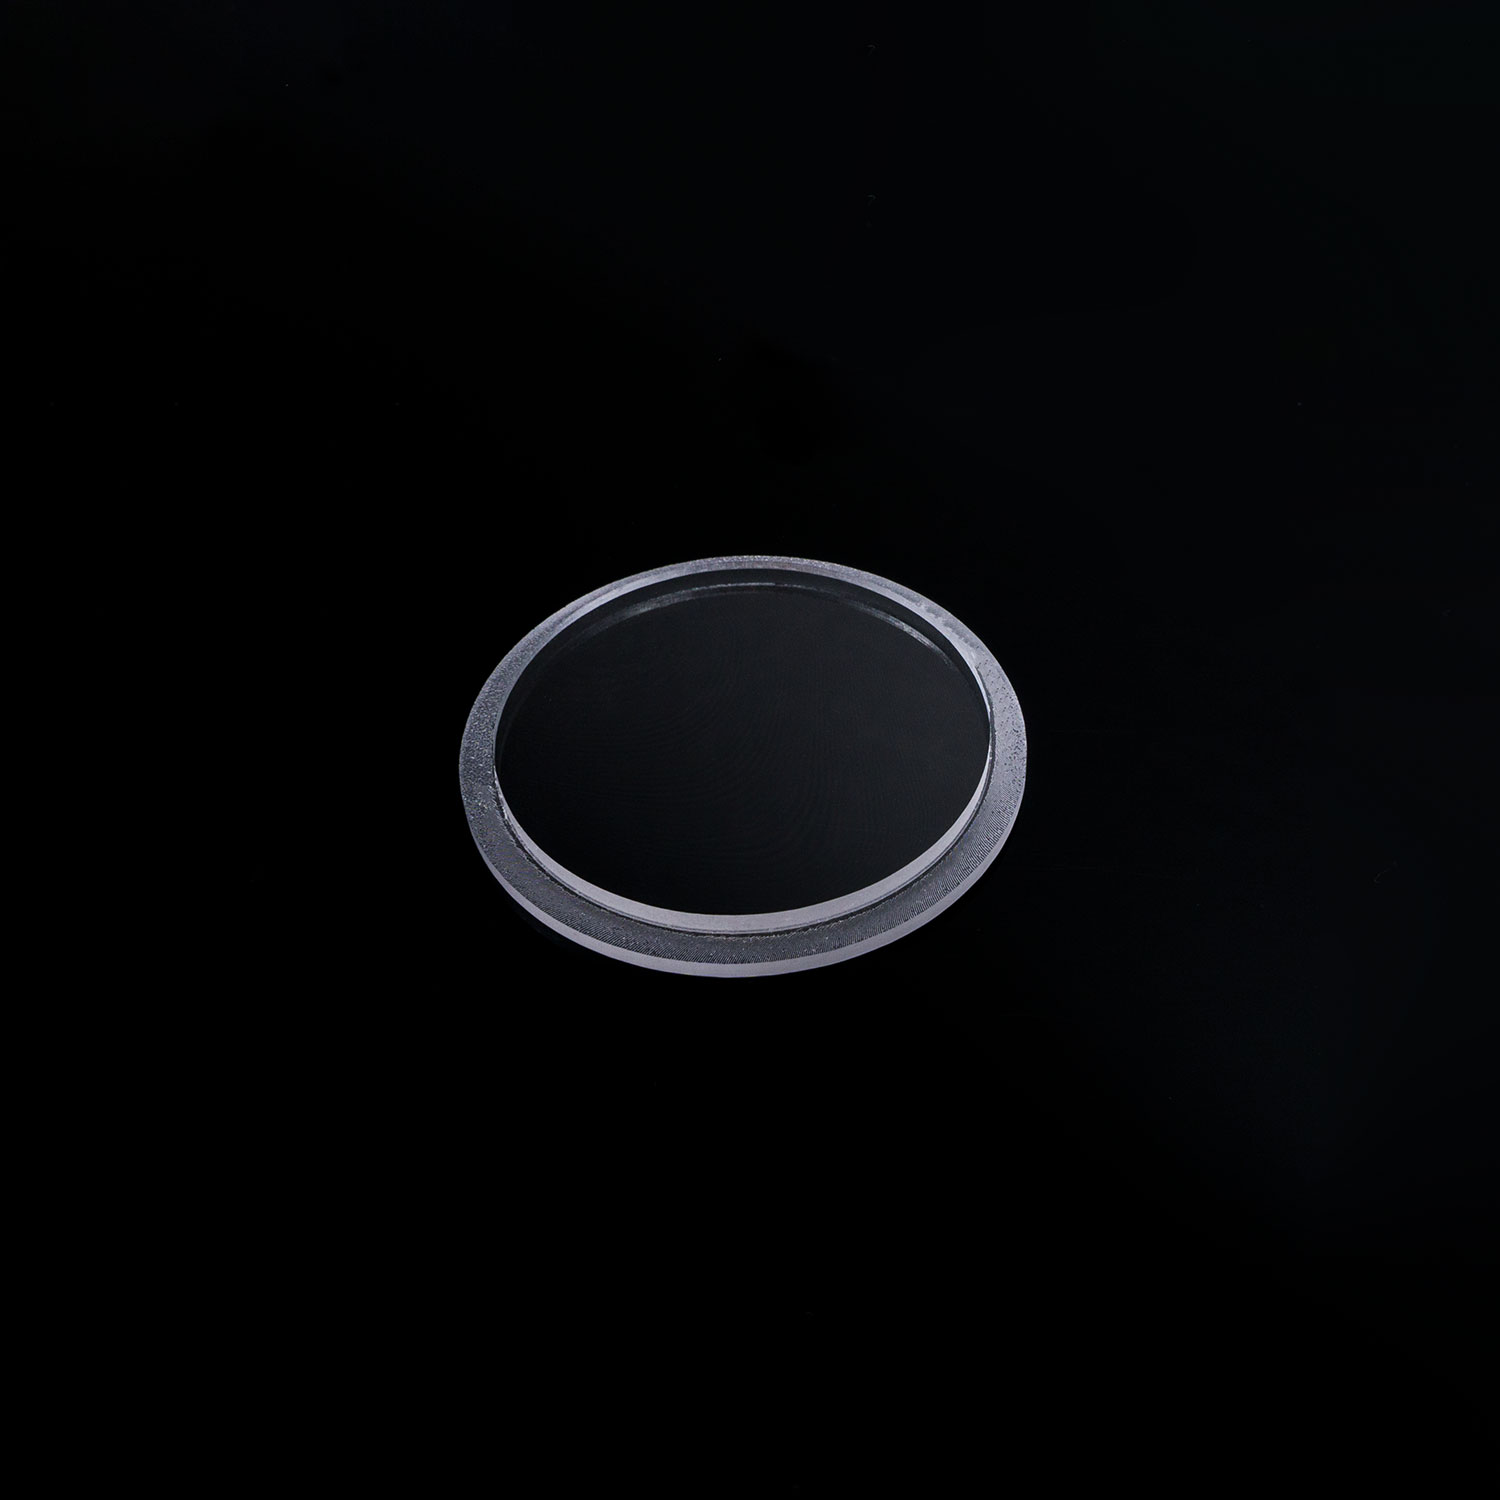 Kreis Plexiglas® zuschnitt Scheibe Platte rund klar o schwarz Ø 90mm Deckel 